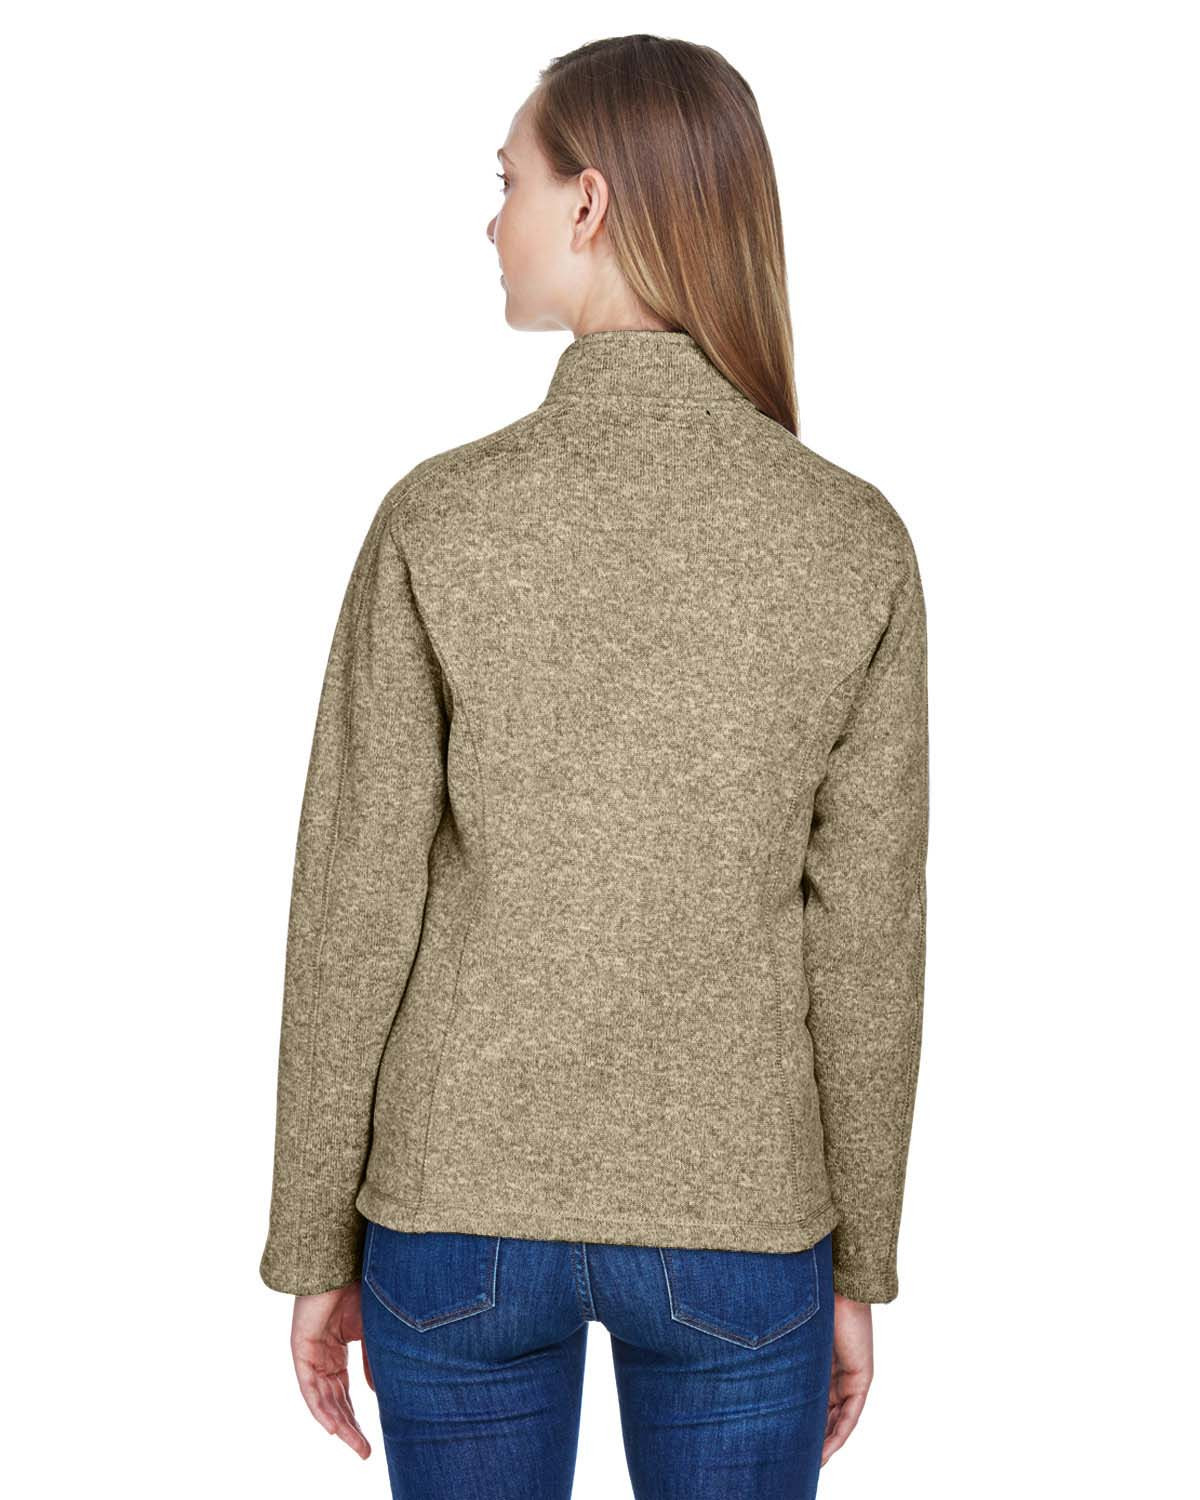 Devon & Jones DG793W Ladies' Bristol Full-Zip Sweater Fleece Jacket 